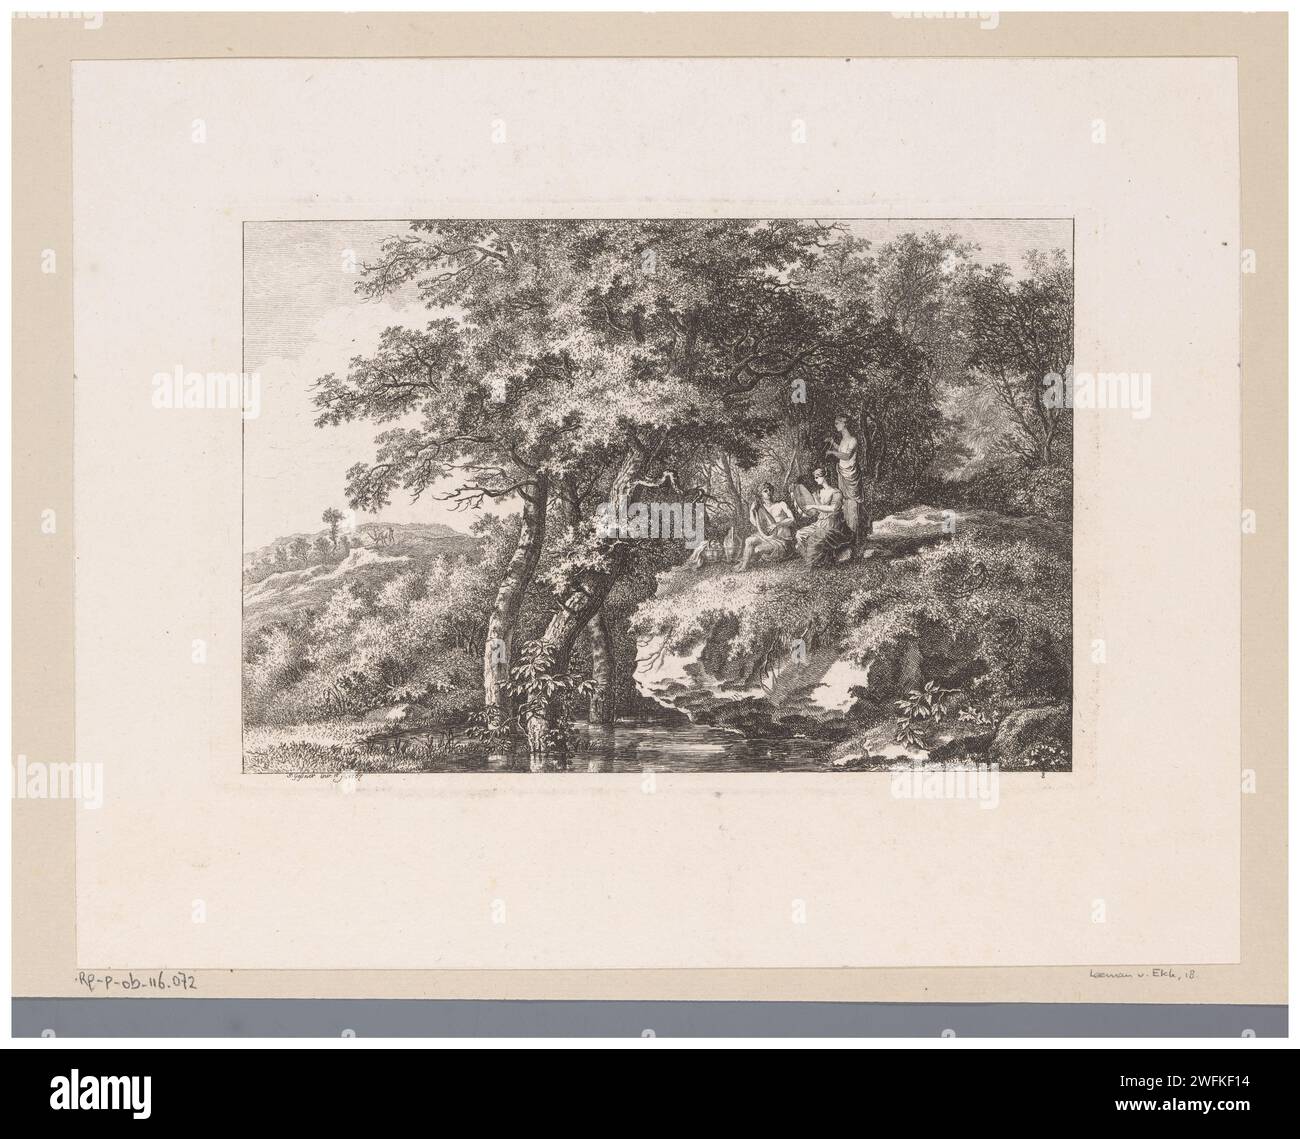 Musicing Trio in an Arcadian Landscape, Salomon Gesner, 1767 carta stampata incide più di un musicista con strumento. Formazioni rocciose - HH - paesaggi ideali Foto Stock